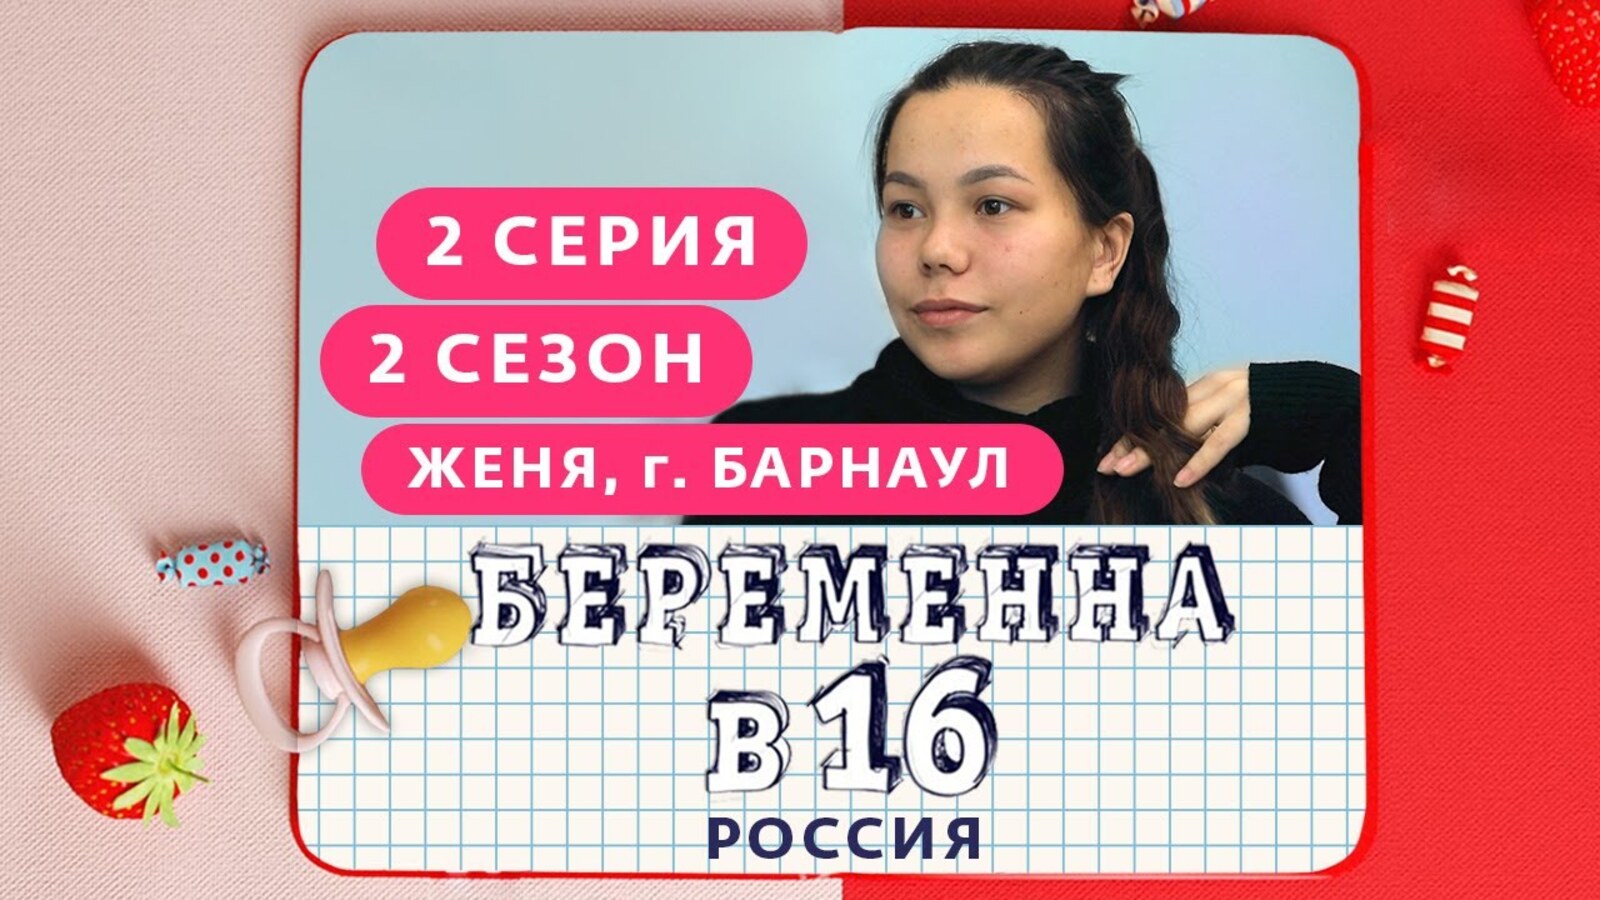 Беременна в 16 сегодняшний выпуск. Беременна в 16. Беременна в 16 русская версия. Беременна в шестнадцать.